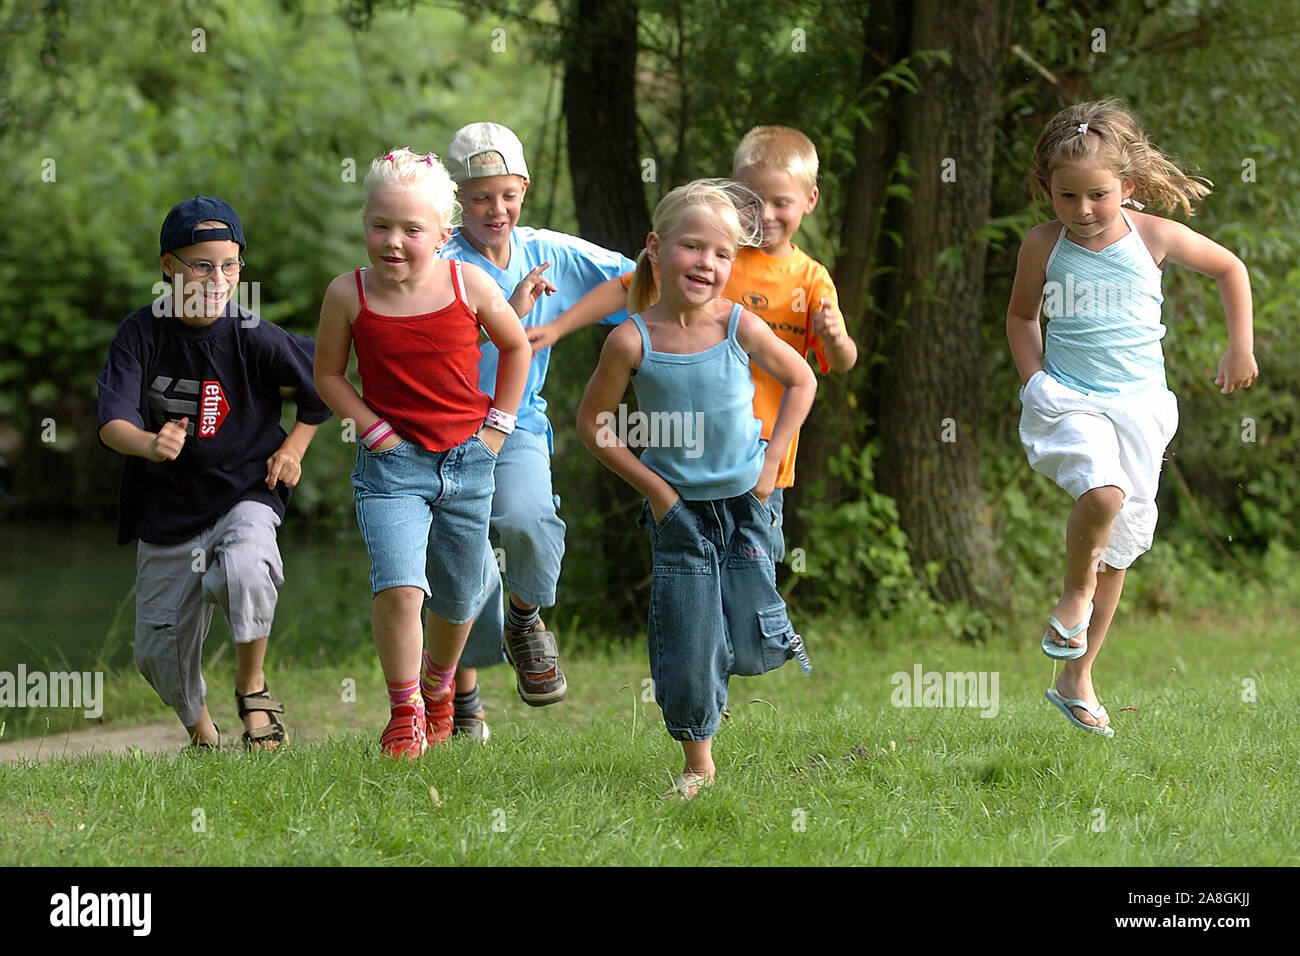 Kinder laufen über eine Wiese im Park, 6 Kinder, Jungs und Mädchen, signor:Sì Foto Stock